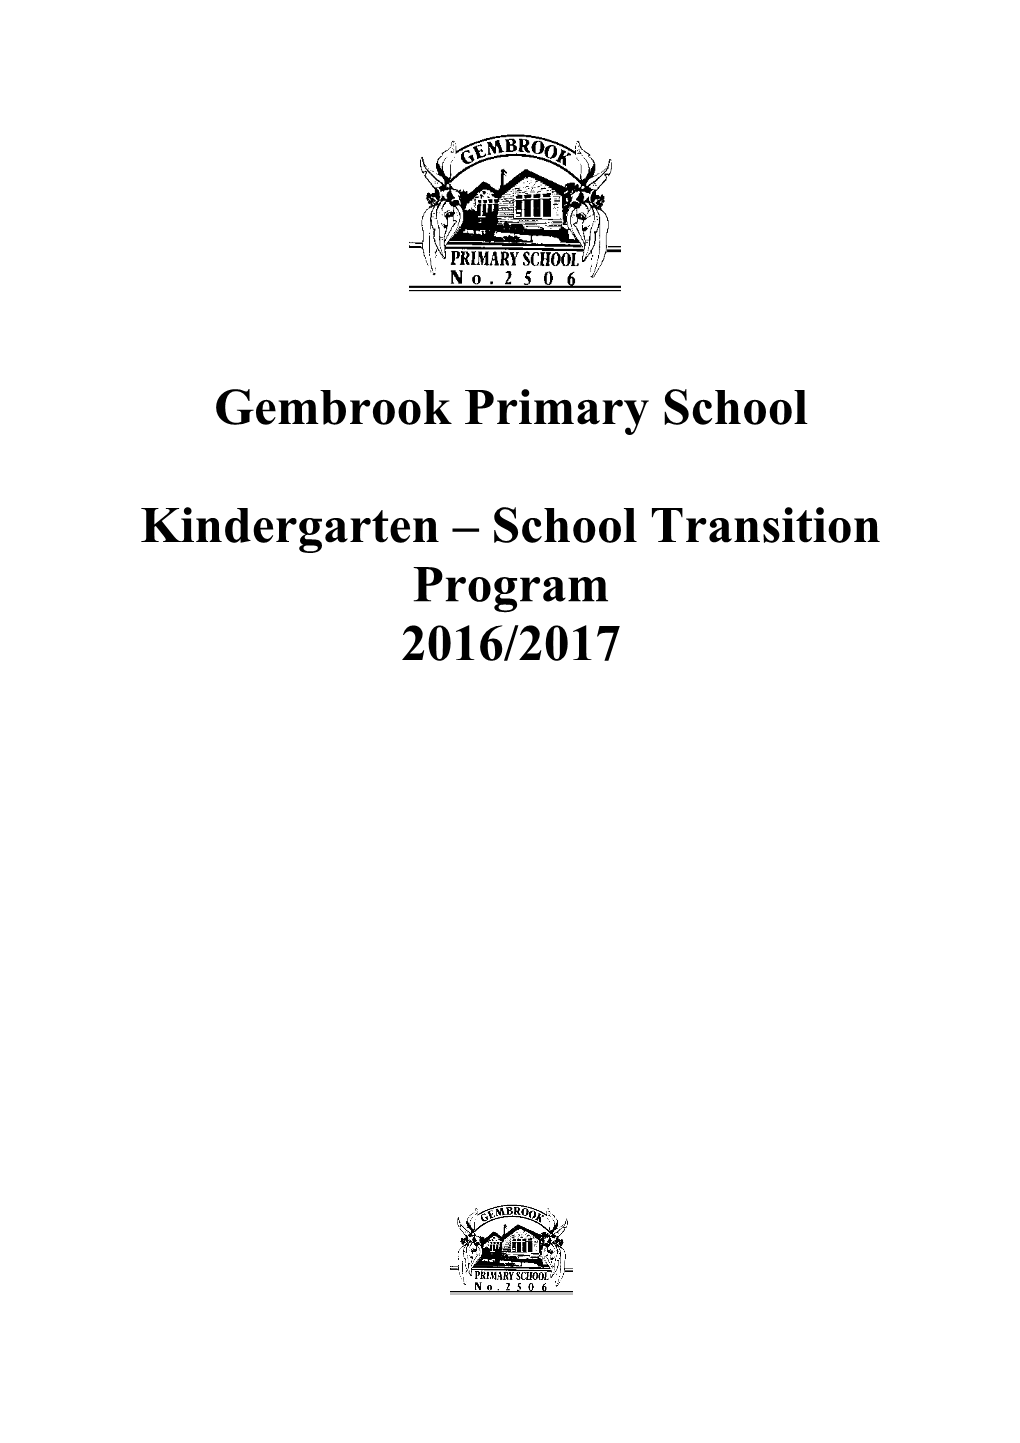 Kindergarten School Transition Program